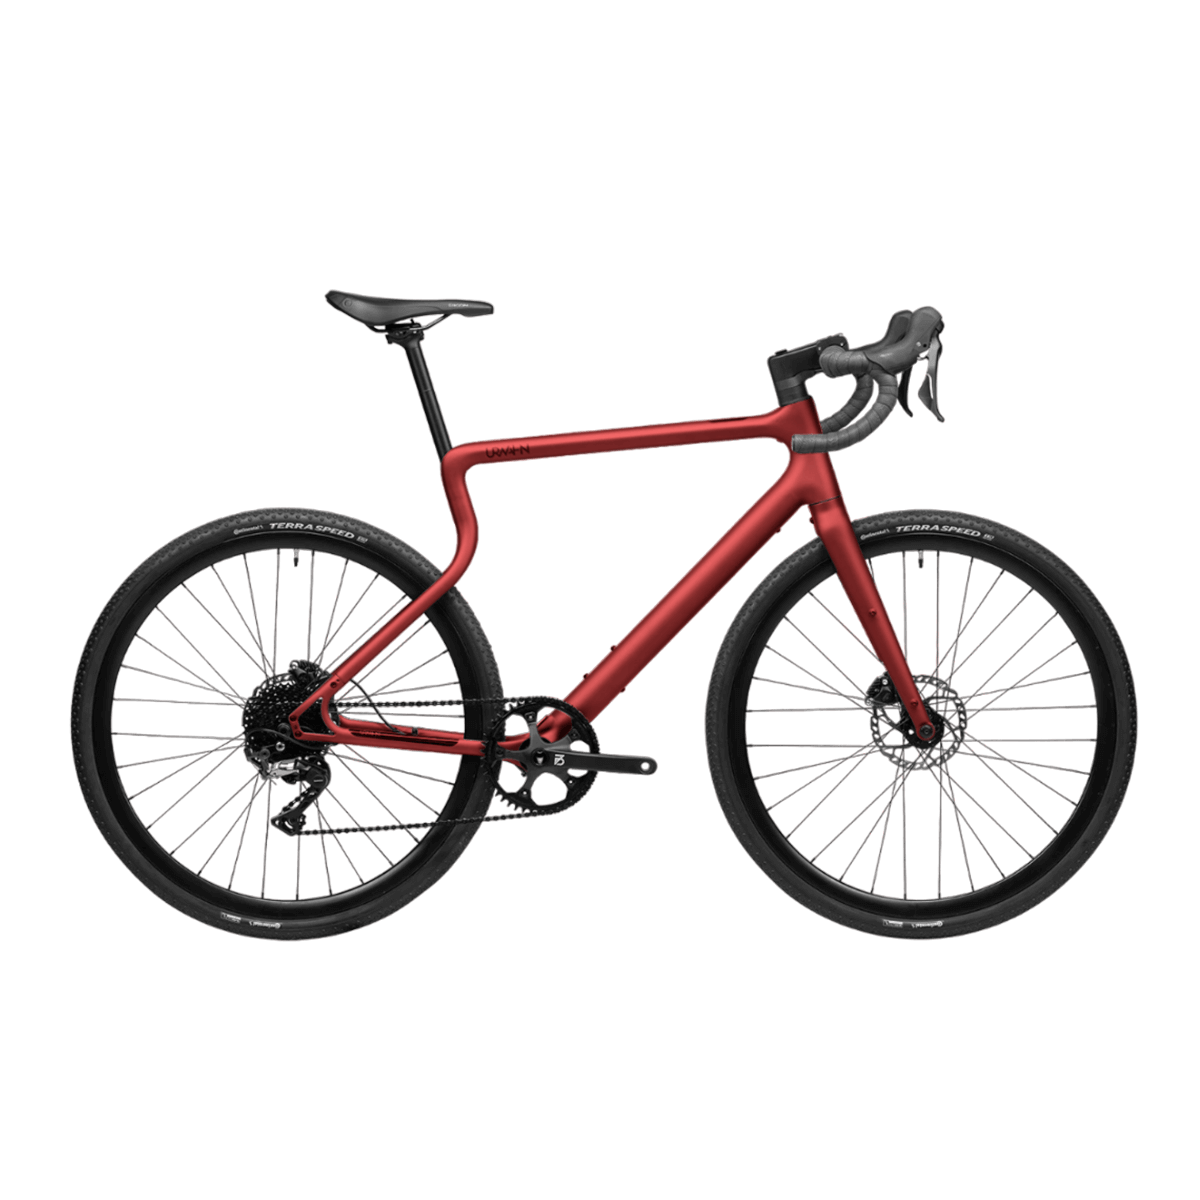 Waldwiesel Gravel Bike - Oxid - No Light